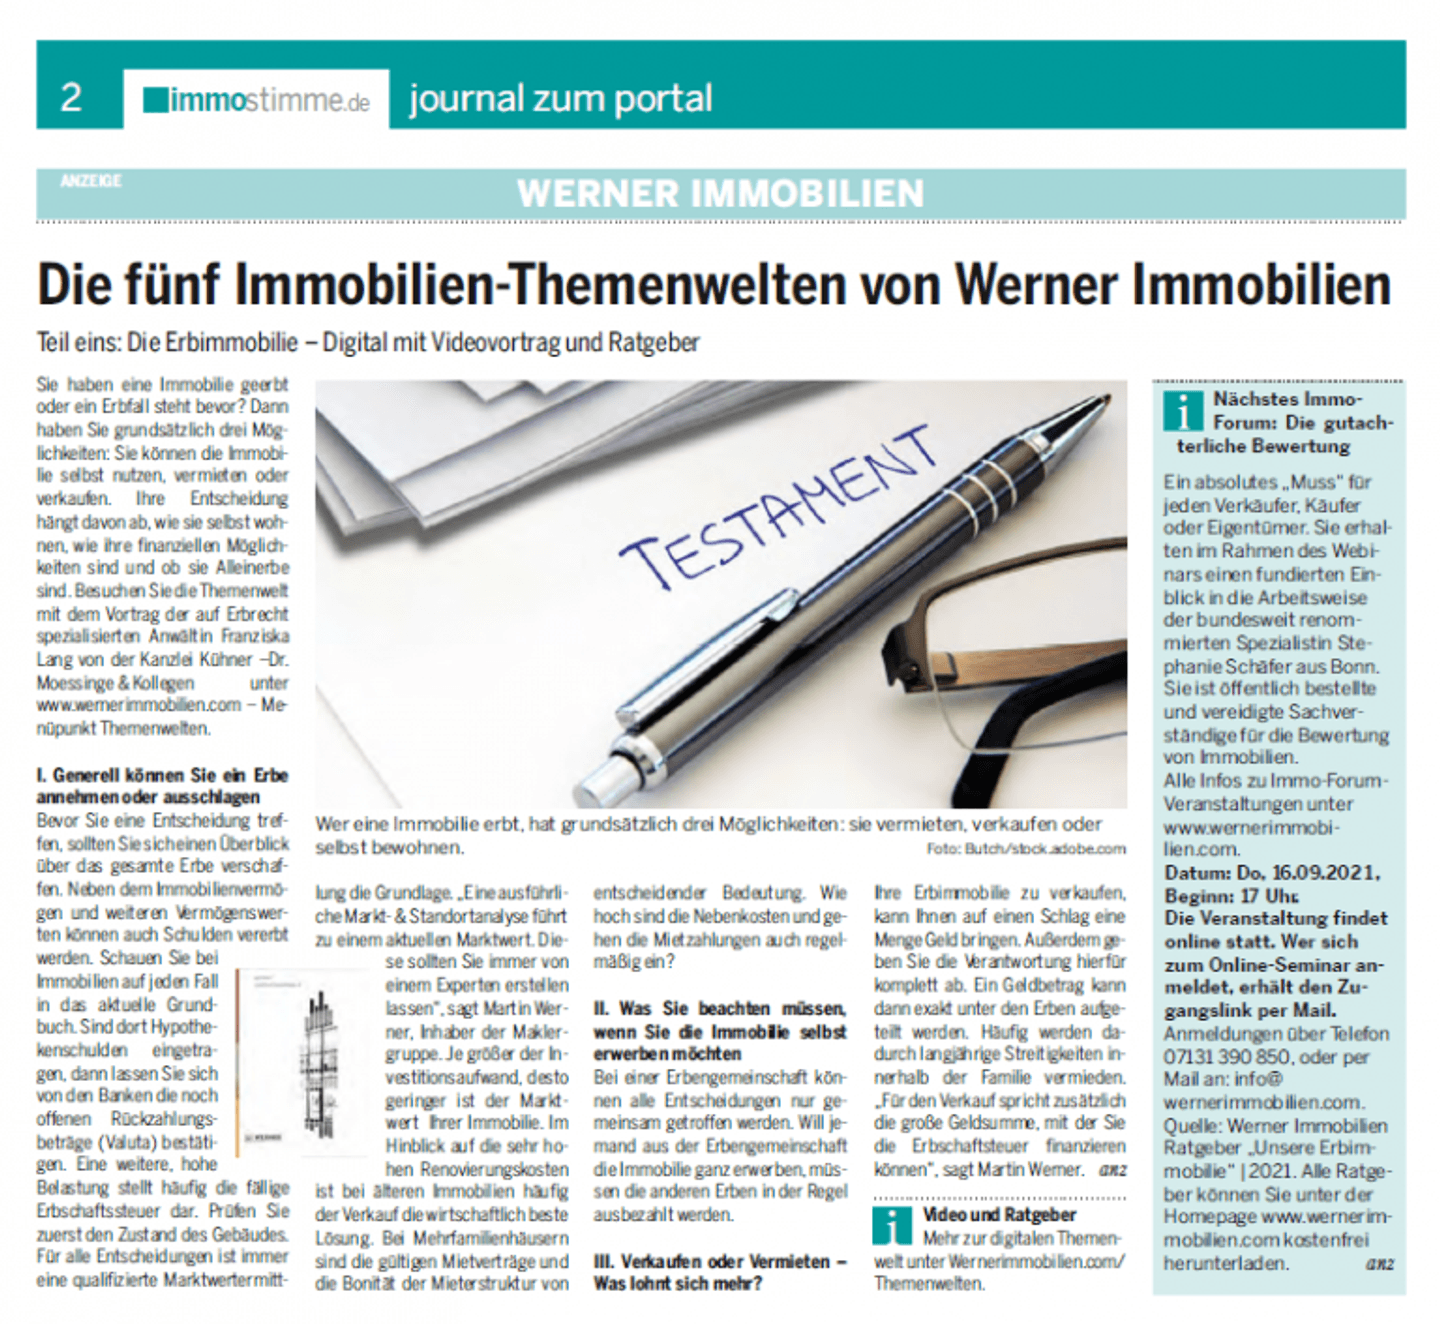 Immobilienmakler Heilbronn_Journal zum Portal_Heilbronner Stimme
					©Martin Werner
				